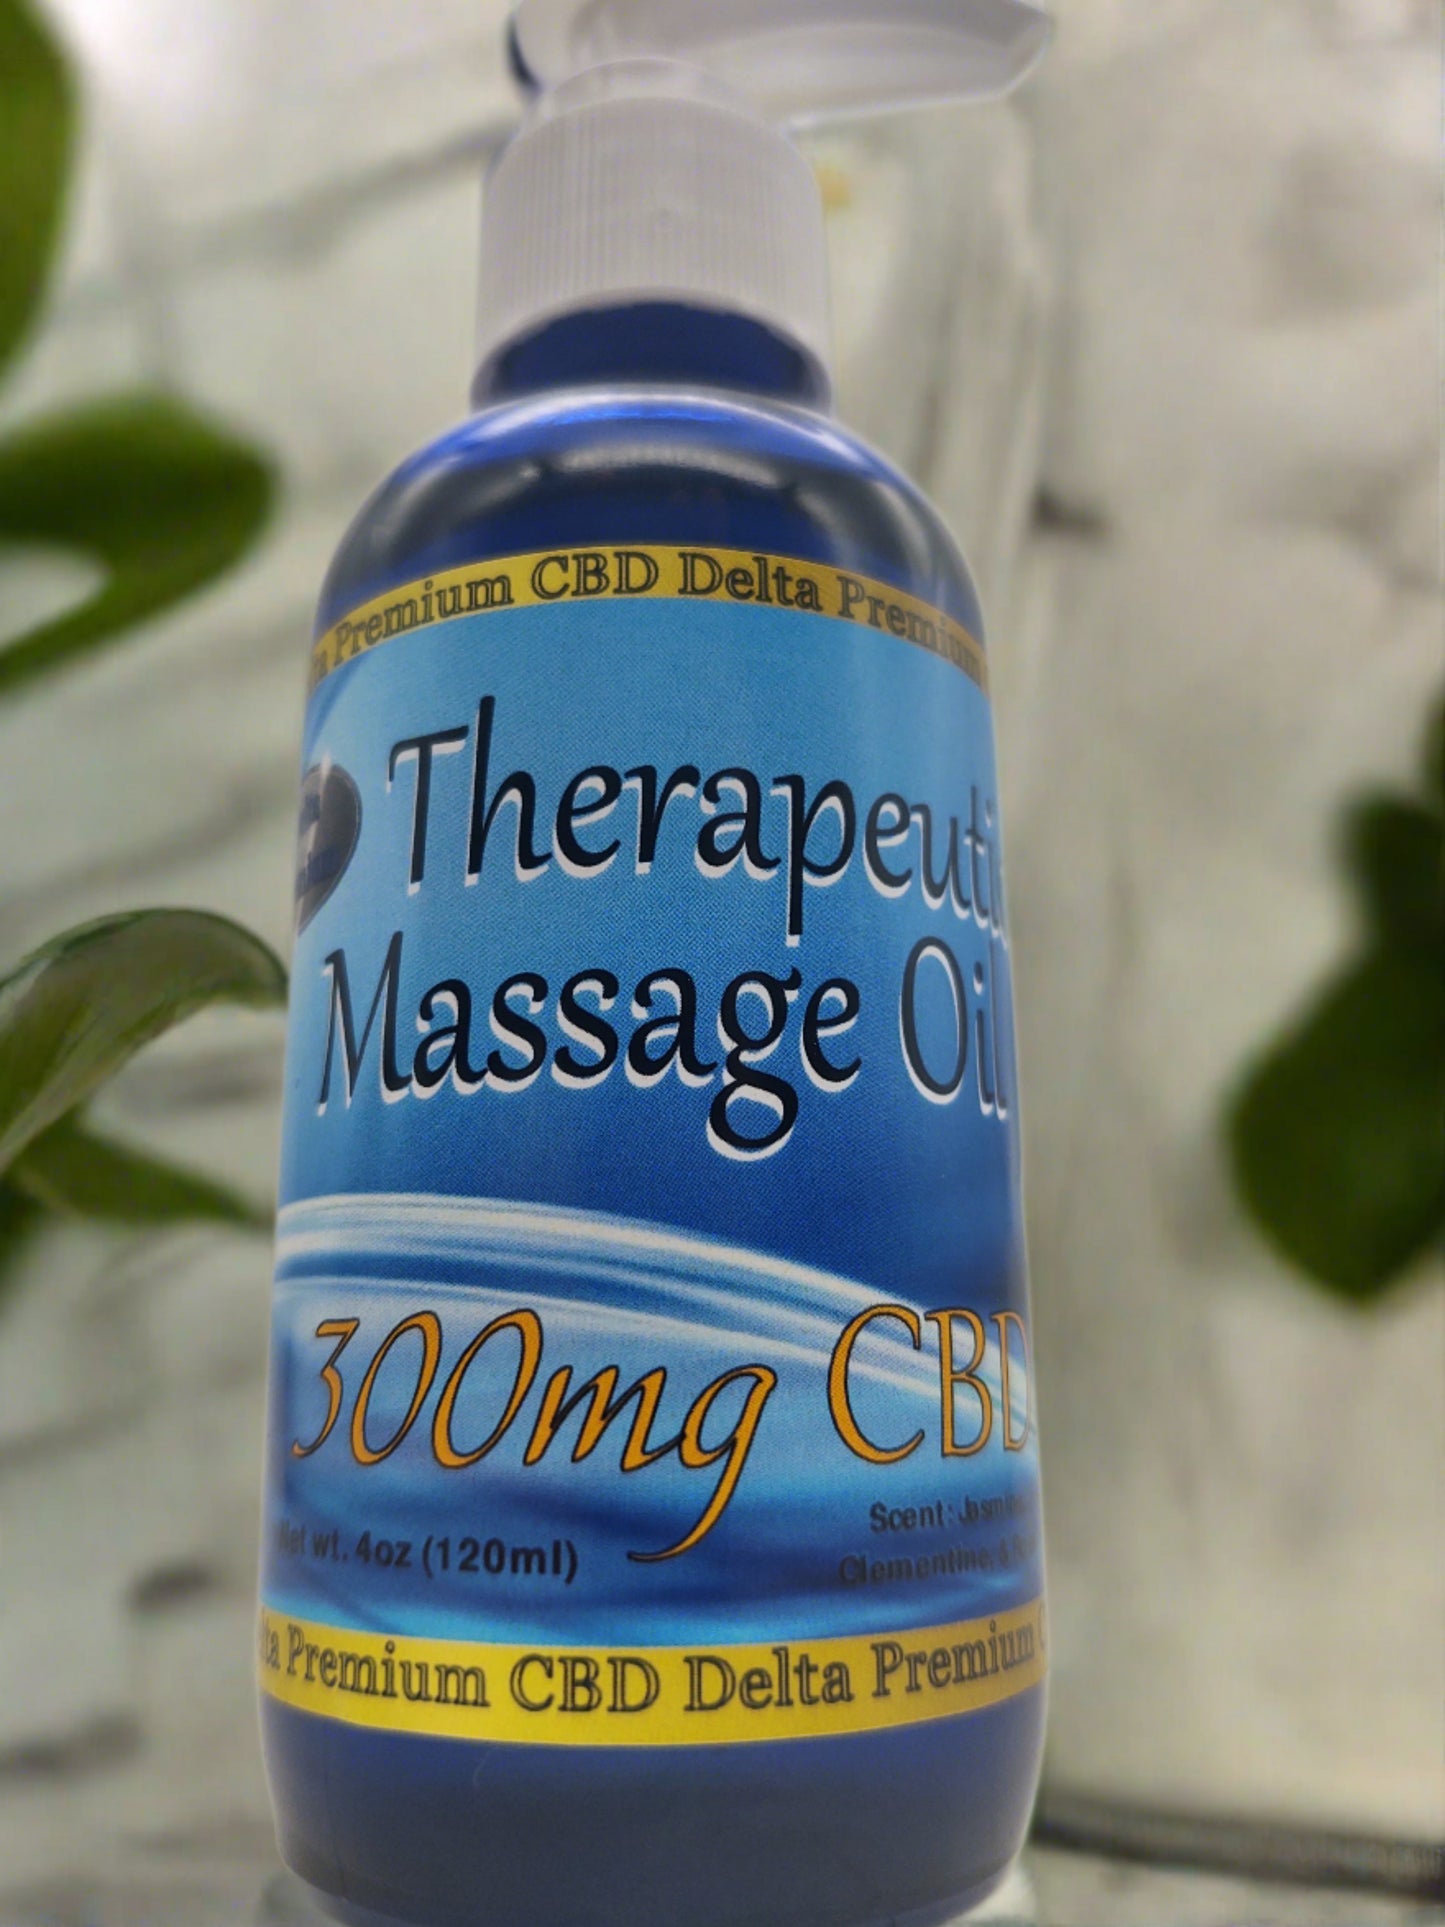 CBD Topical Therapeutic Massage Oil 300mg 120ml All Natural Delta Premium CBD